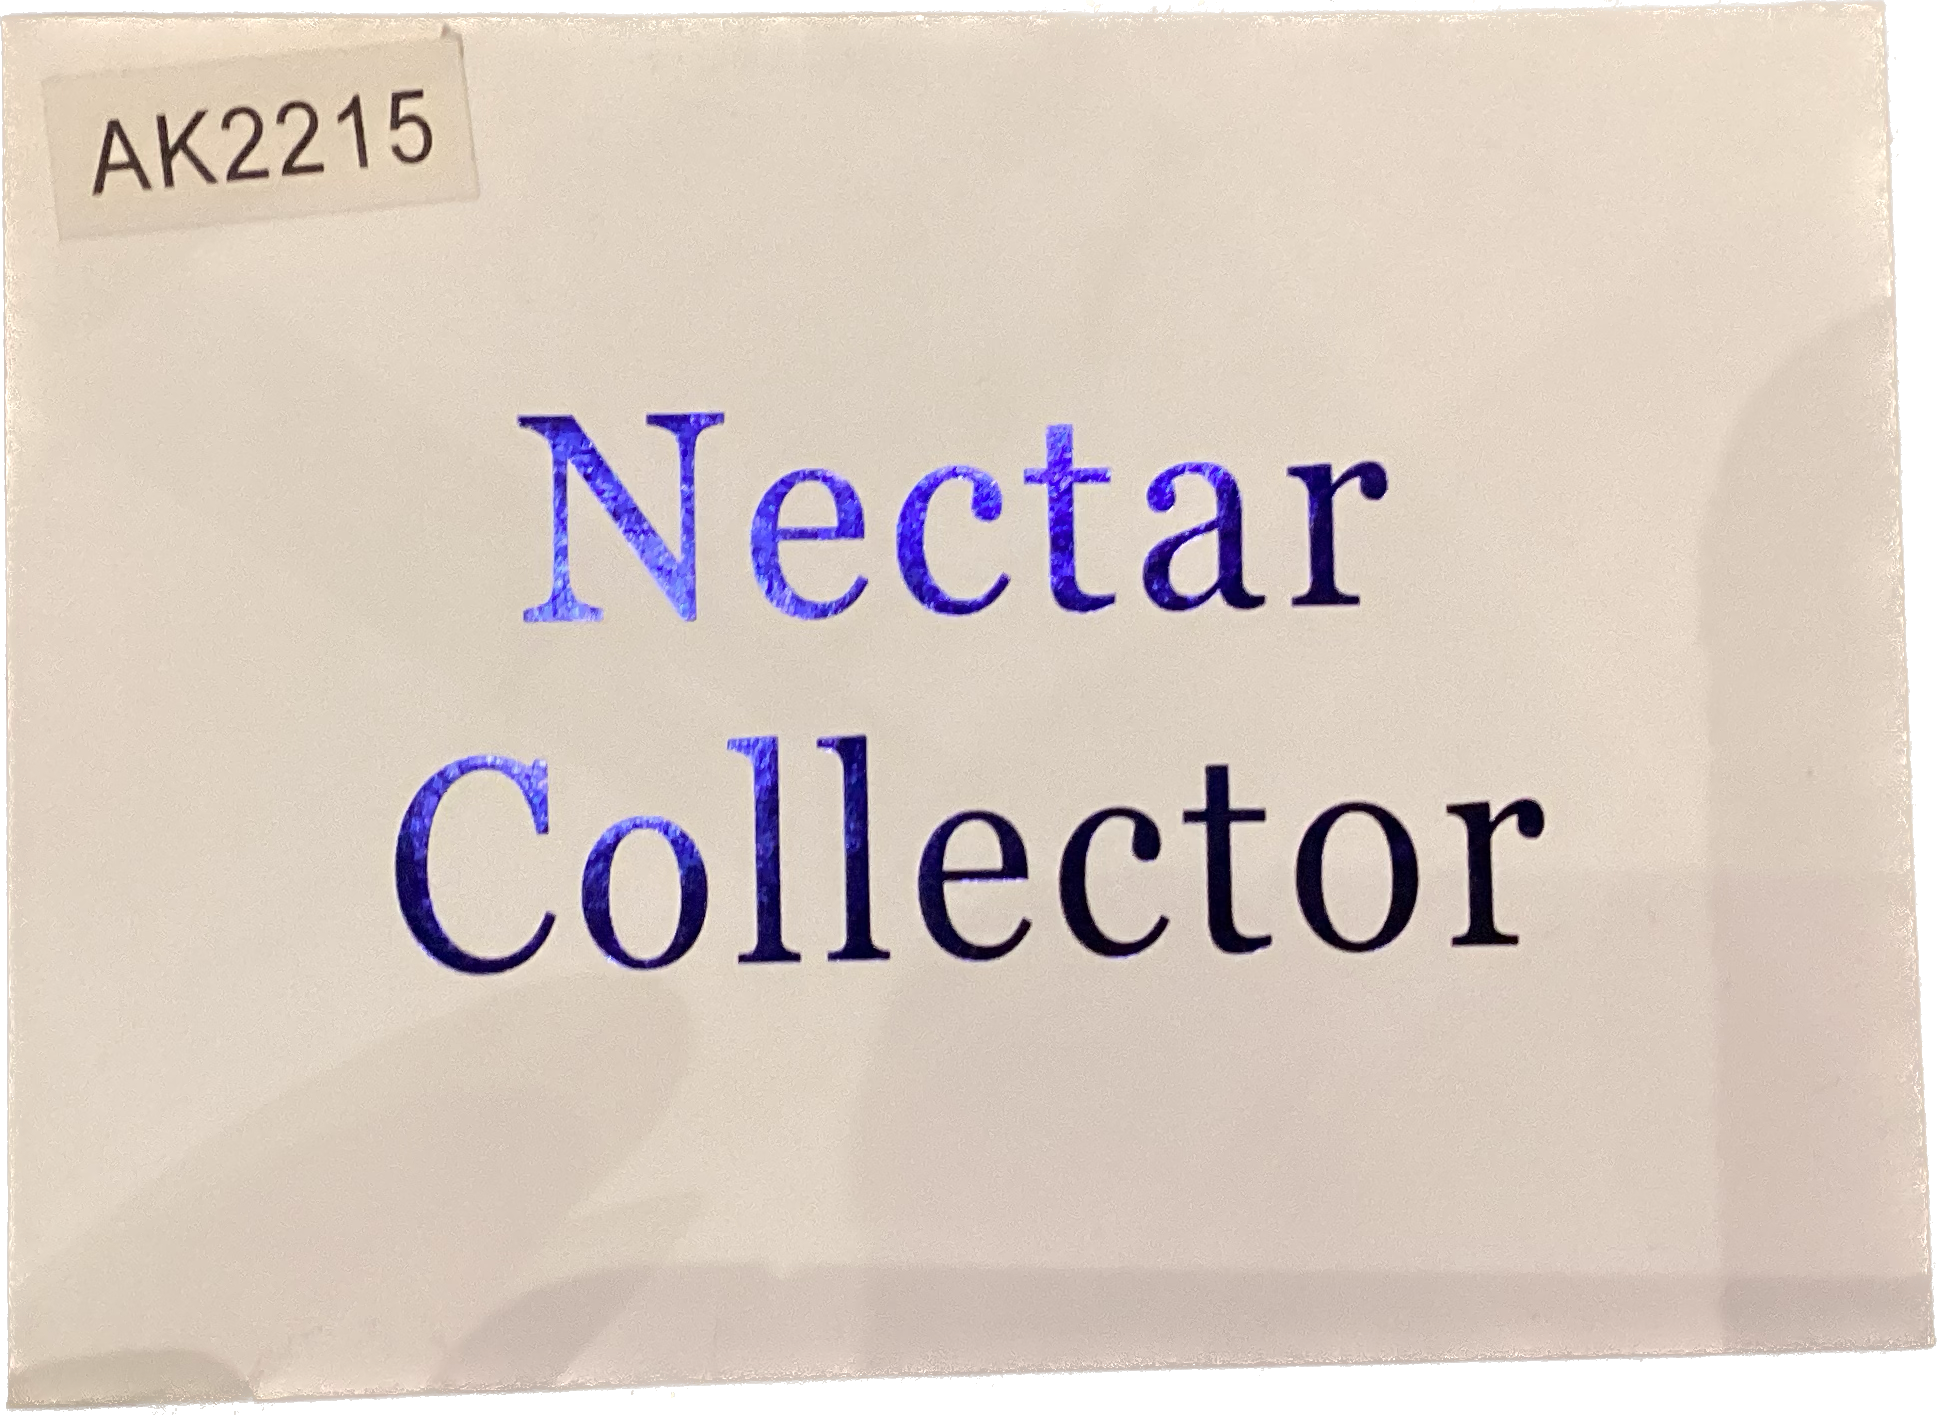 AK2215 Nectar Collector